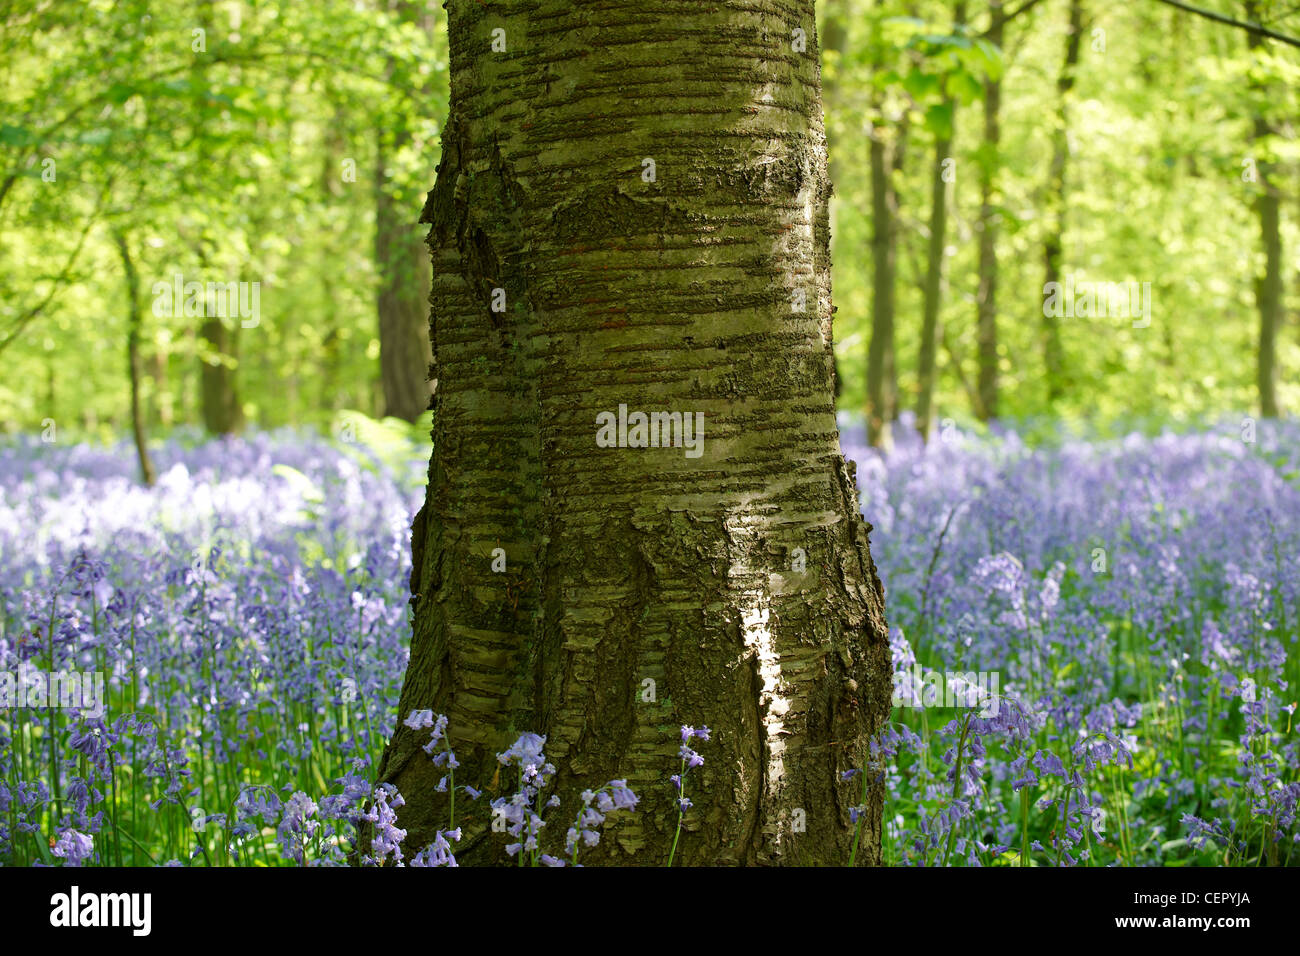 Un árbol de pie en un bosque lleno de campanillas. Foto de stock